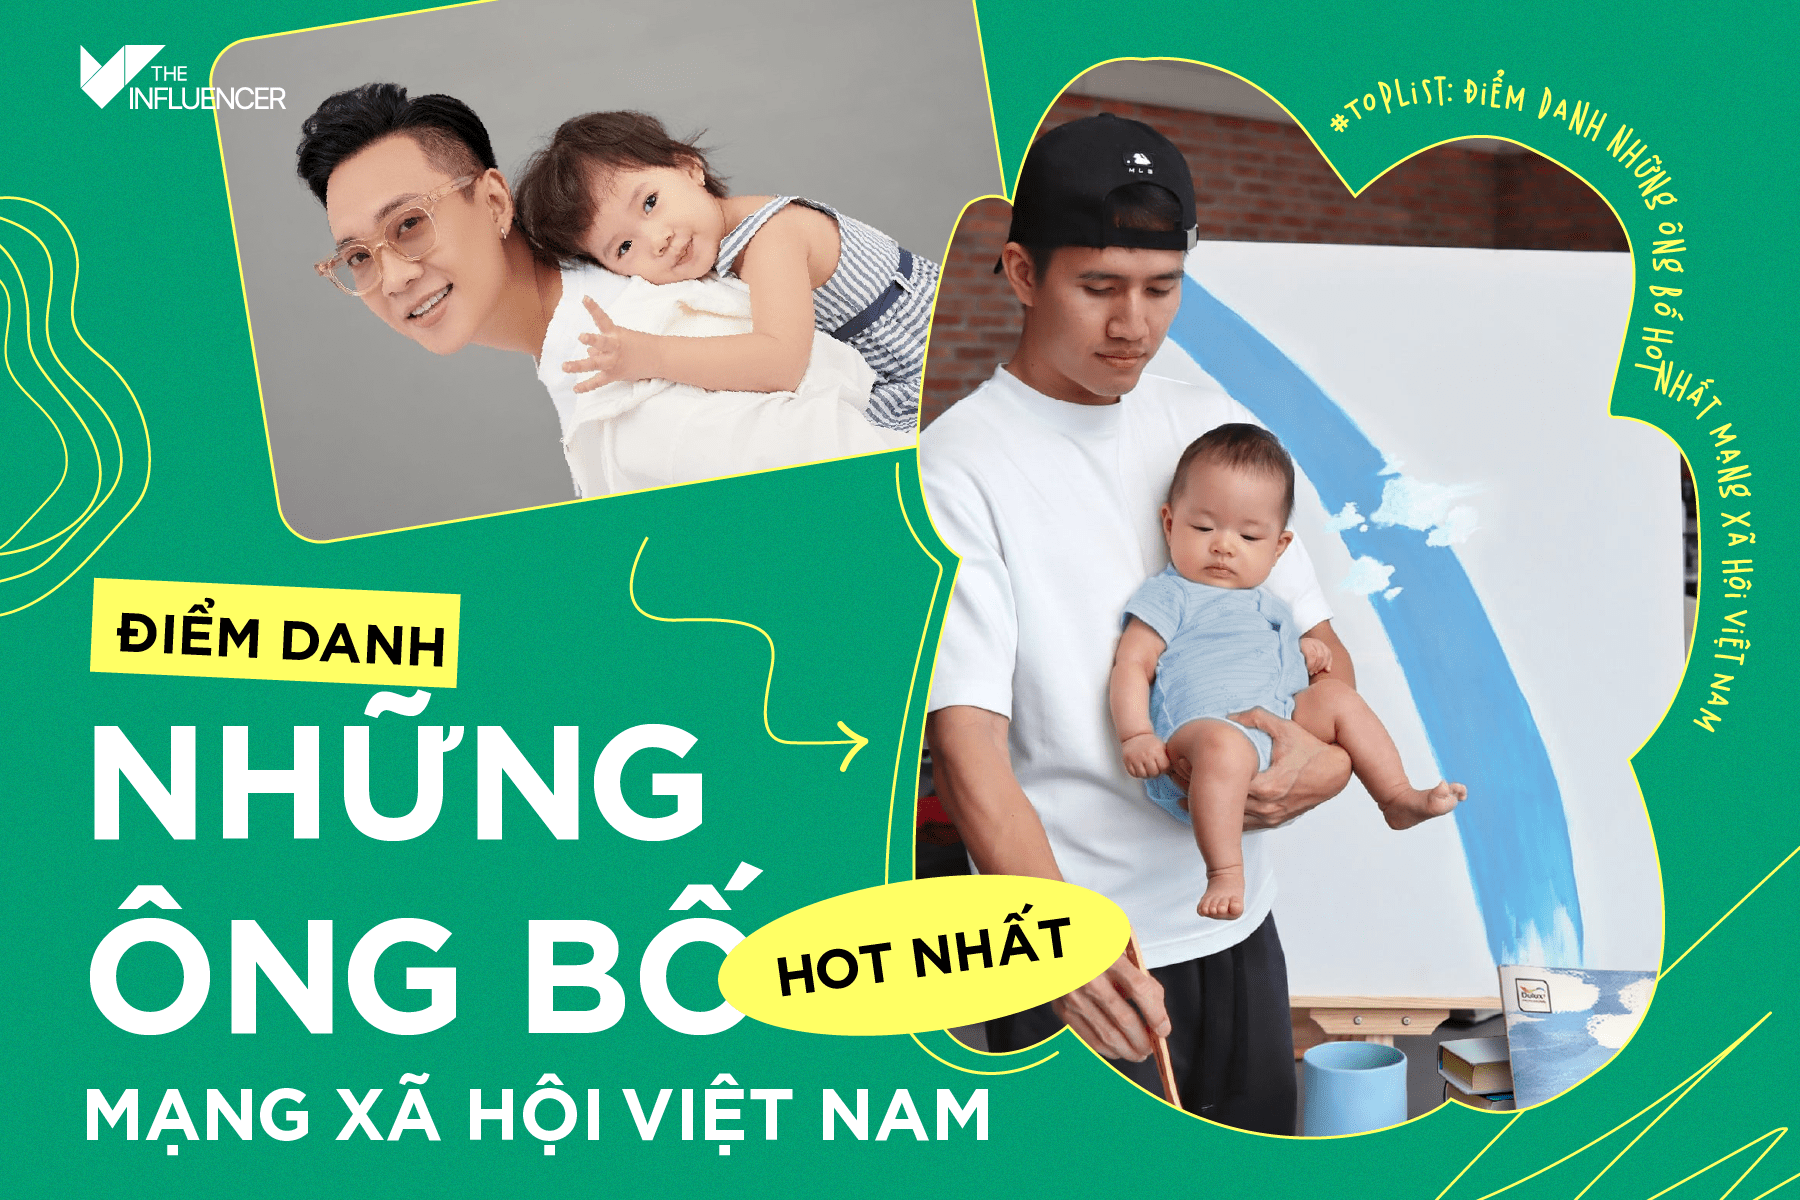 #Toplist: Điểm danh những ông bố hot nhất mạng xã hội Việt Nam